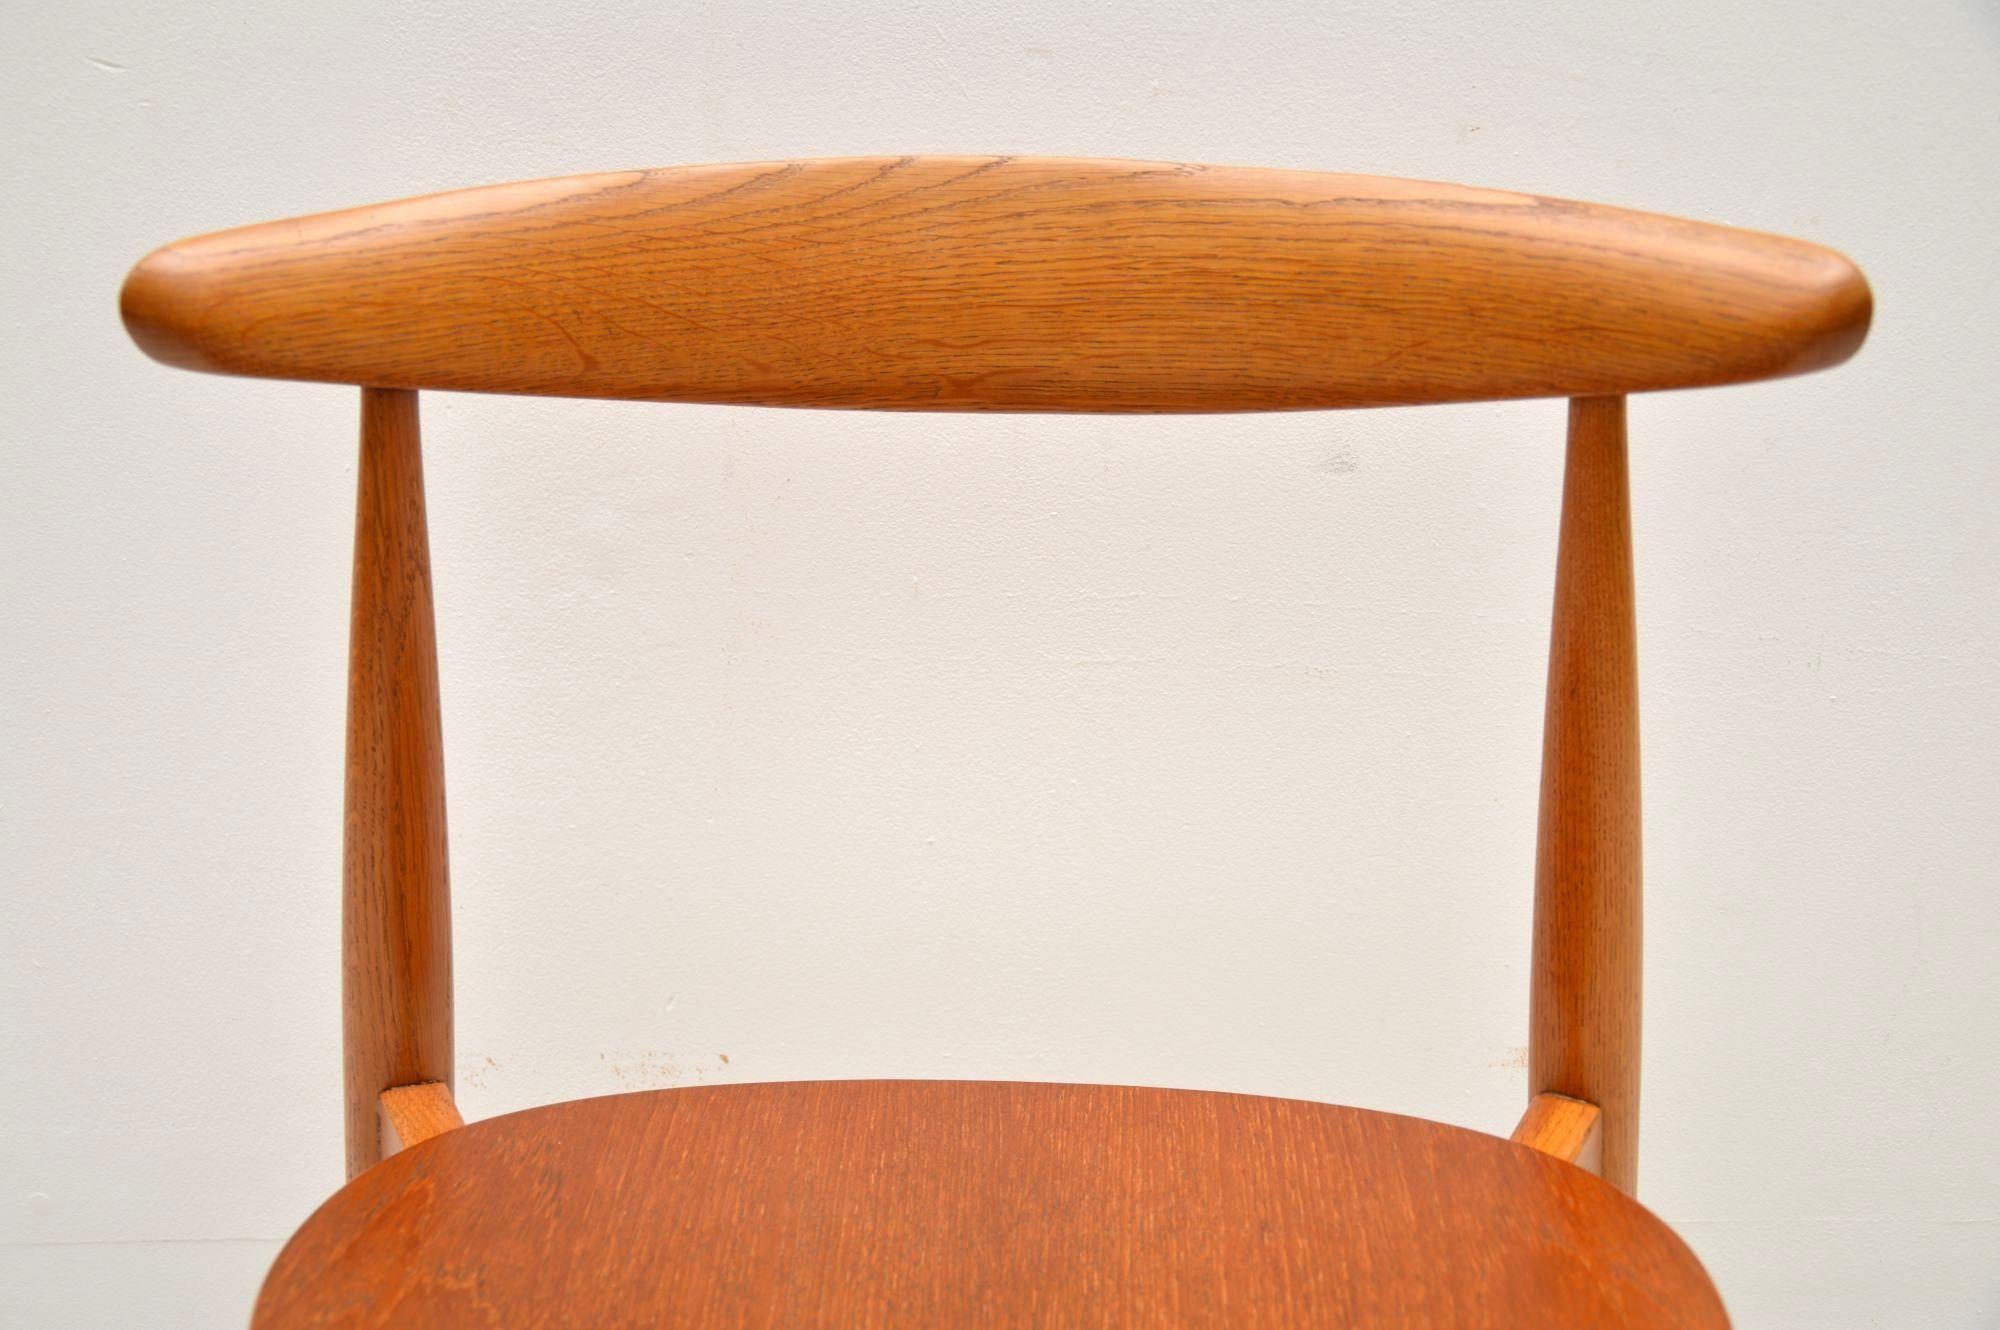 1950s Danish Teak & Oak Dining Table & Chairs by Hans Wegner for Fritz Hansen 8